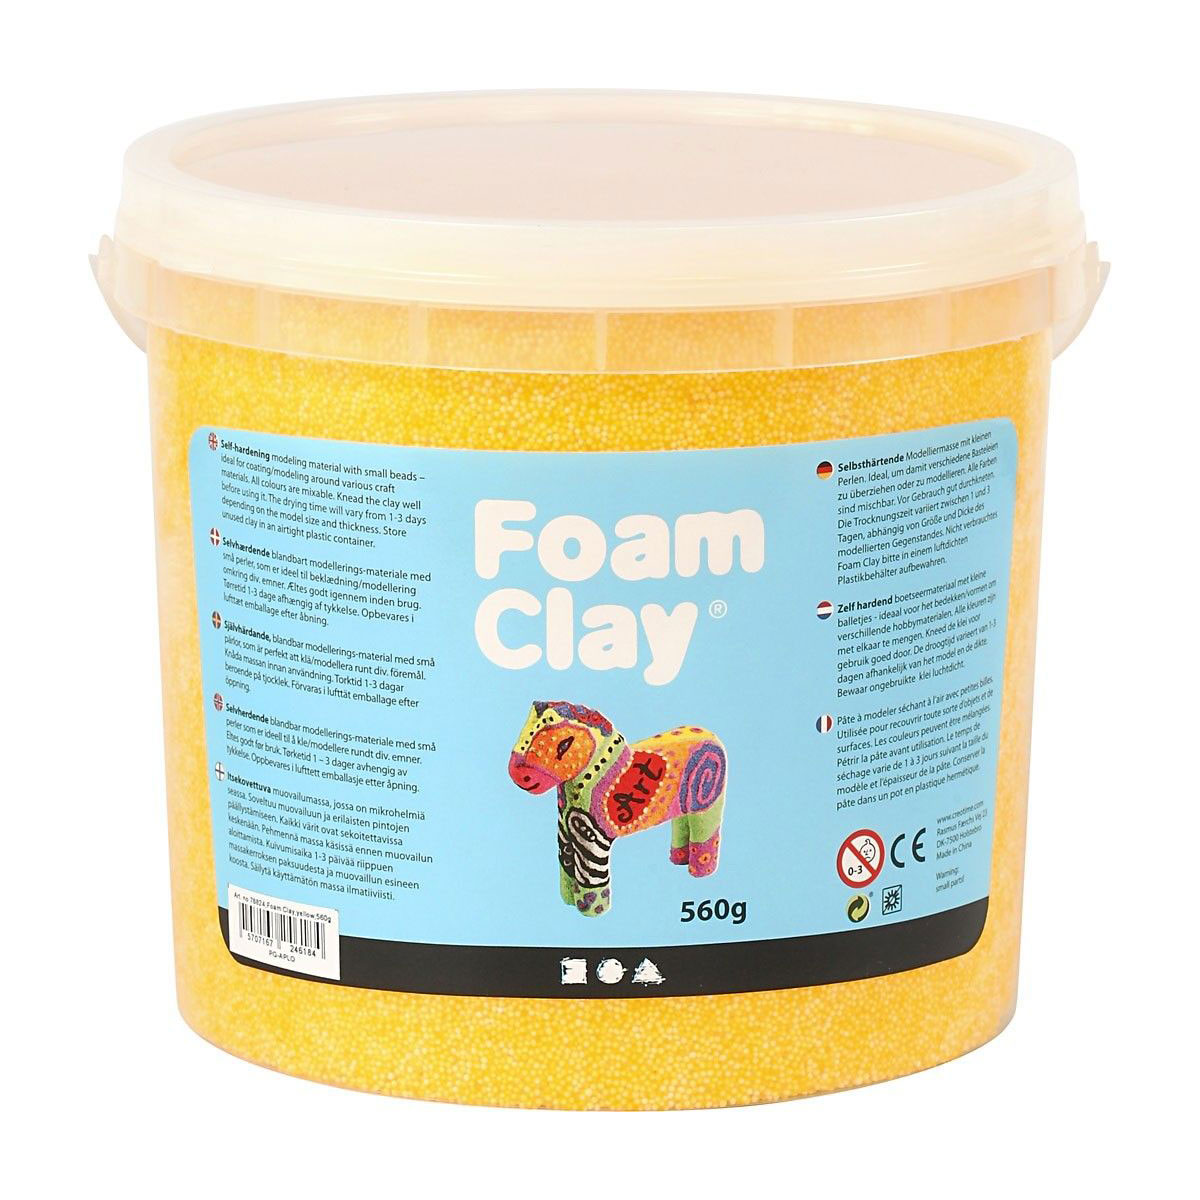 Foam Clay - Geel, 560gr.